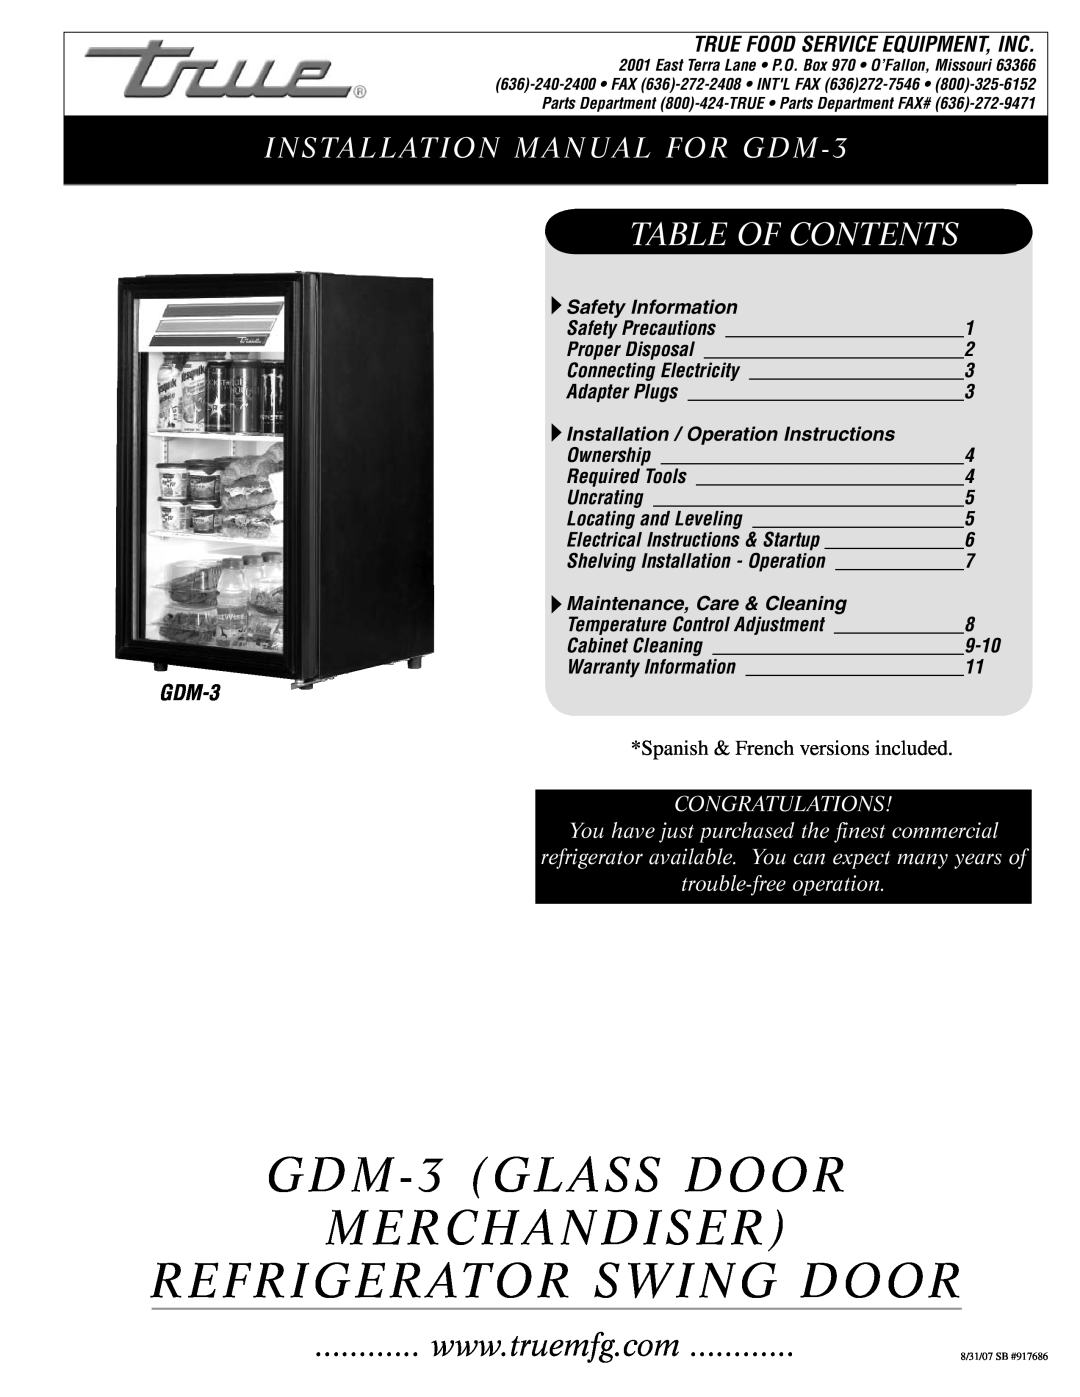 True Manufacturing Company installation manual GDM-3 GLASS DOOR MERCHANDISER REFRIGERATOR SWING DOOR, Table Of Contents 